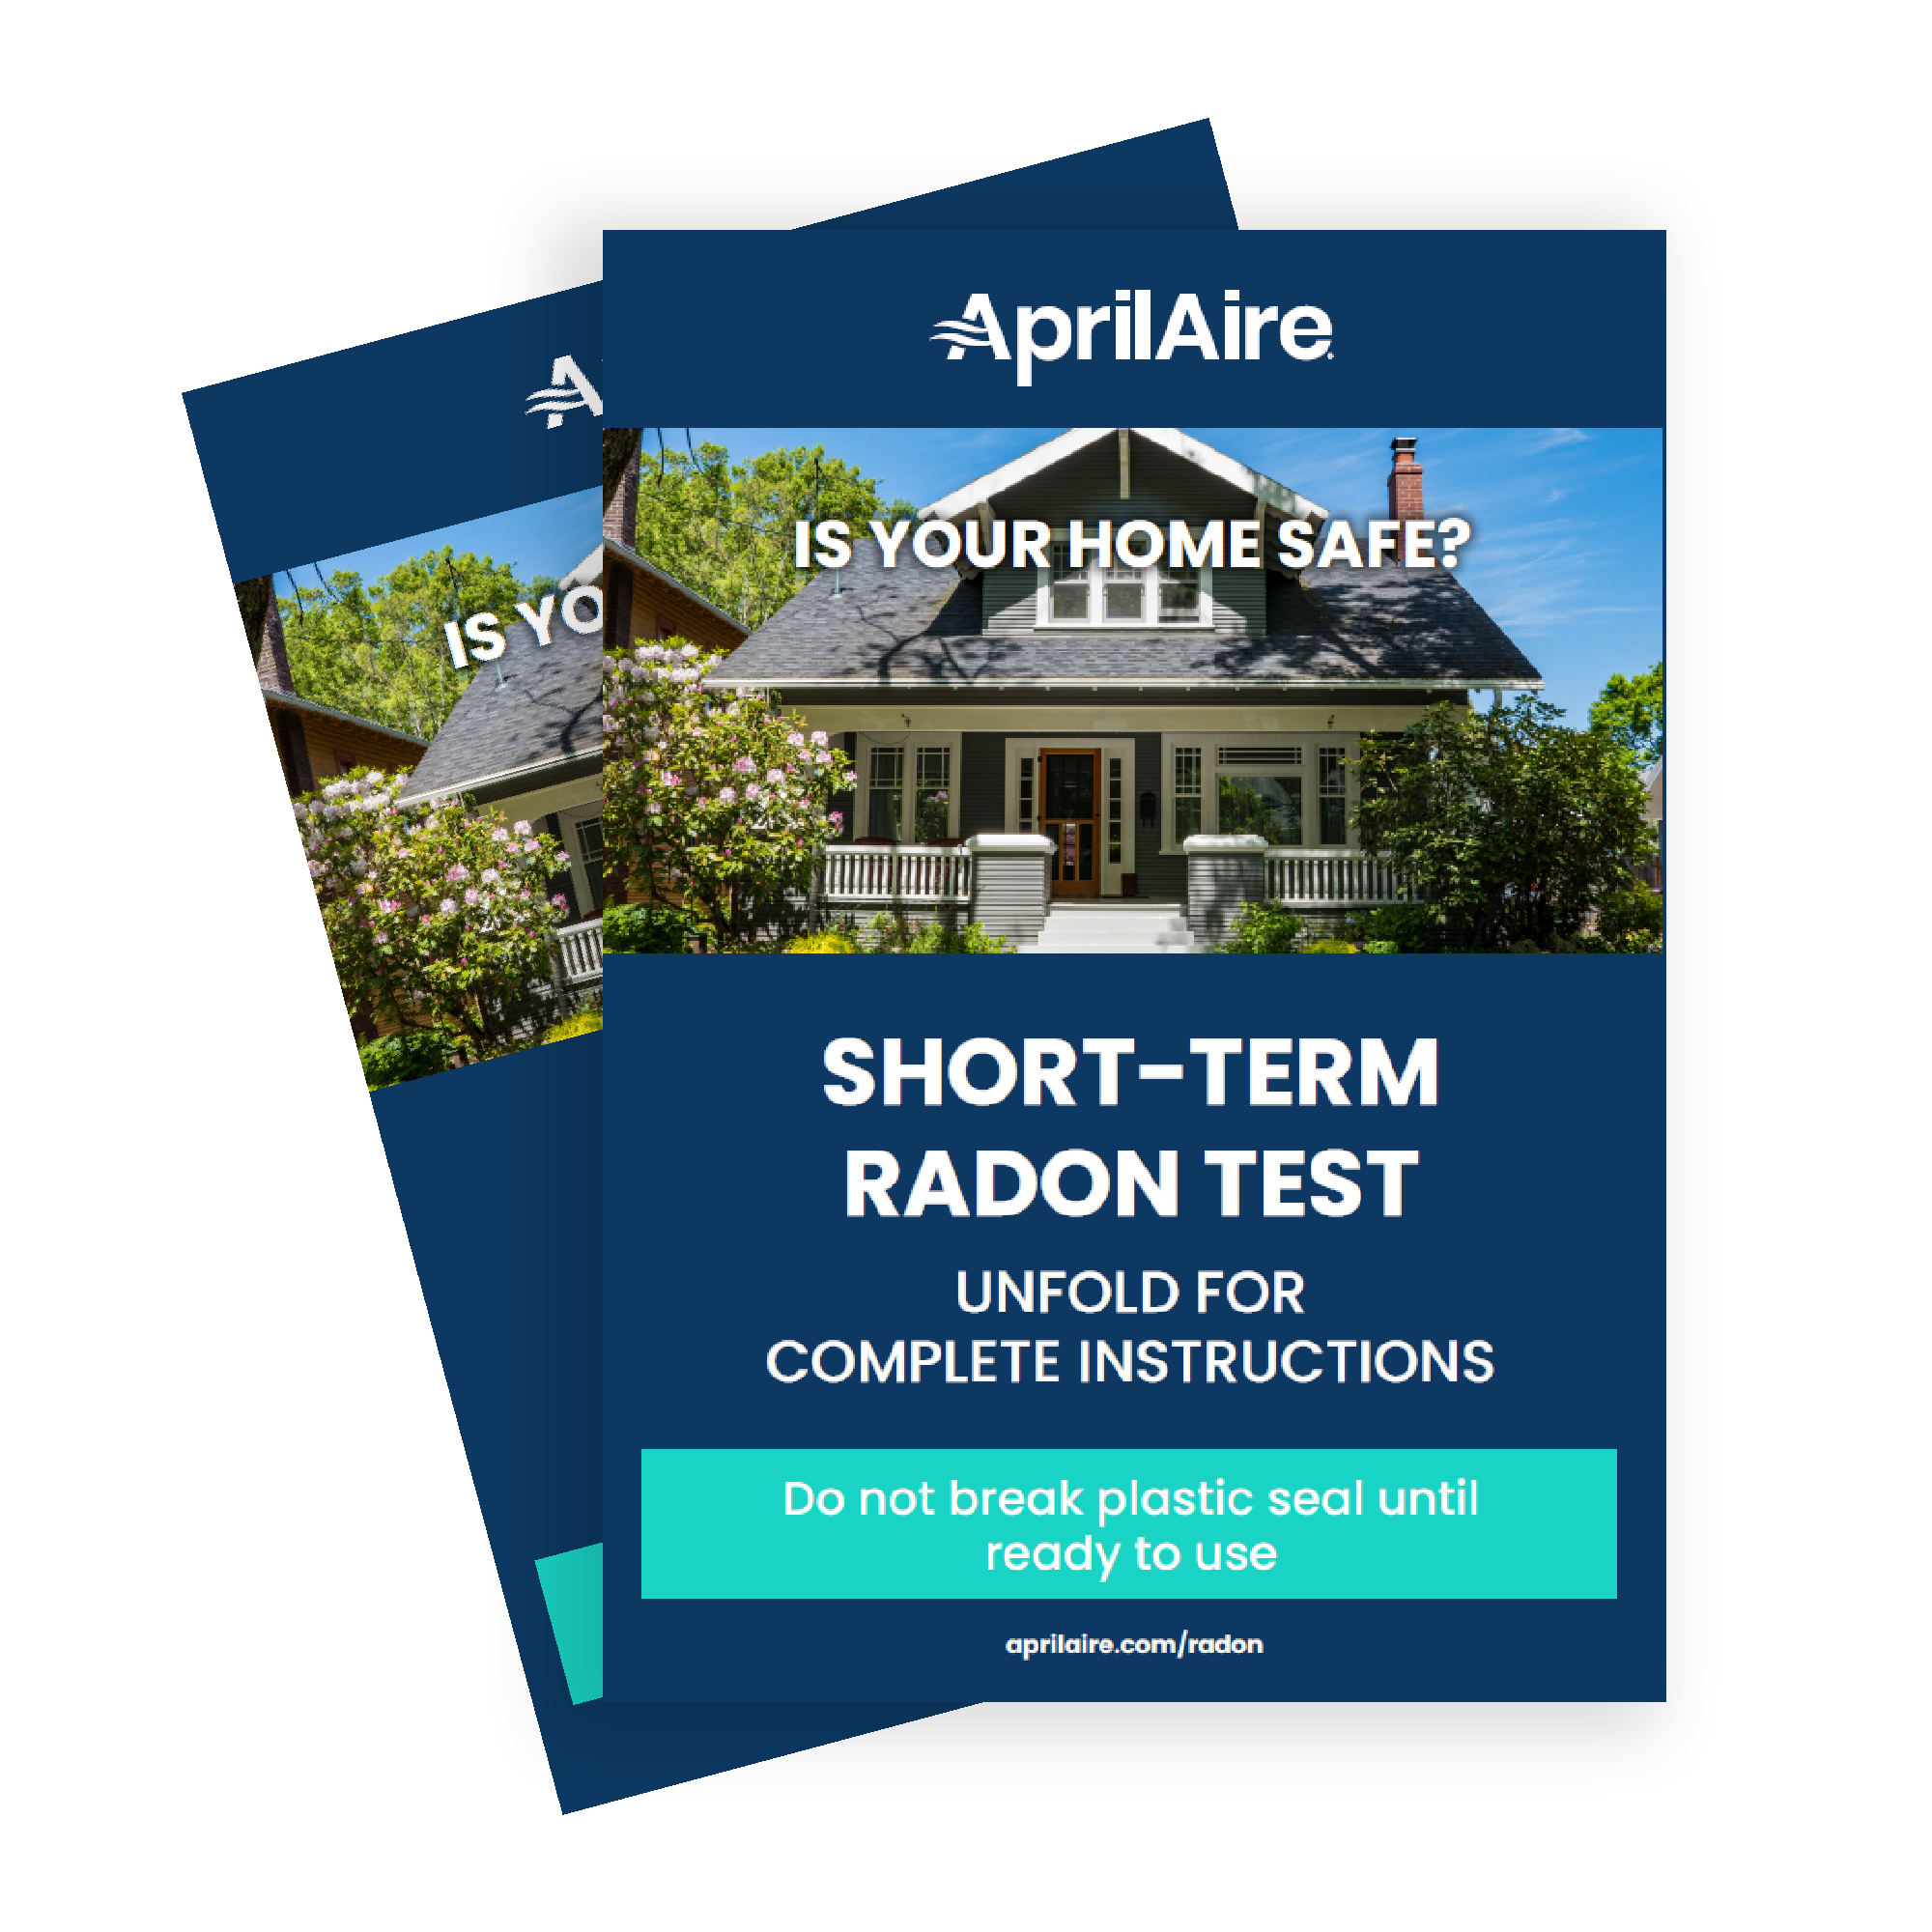 Radon Test Kits